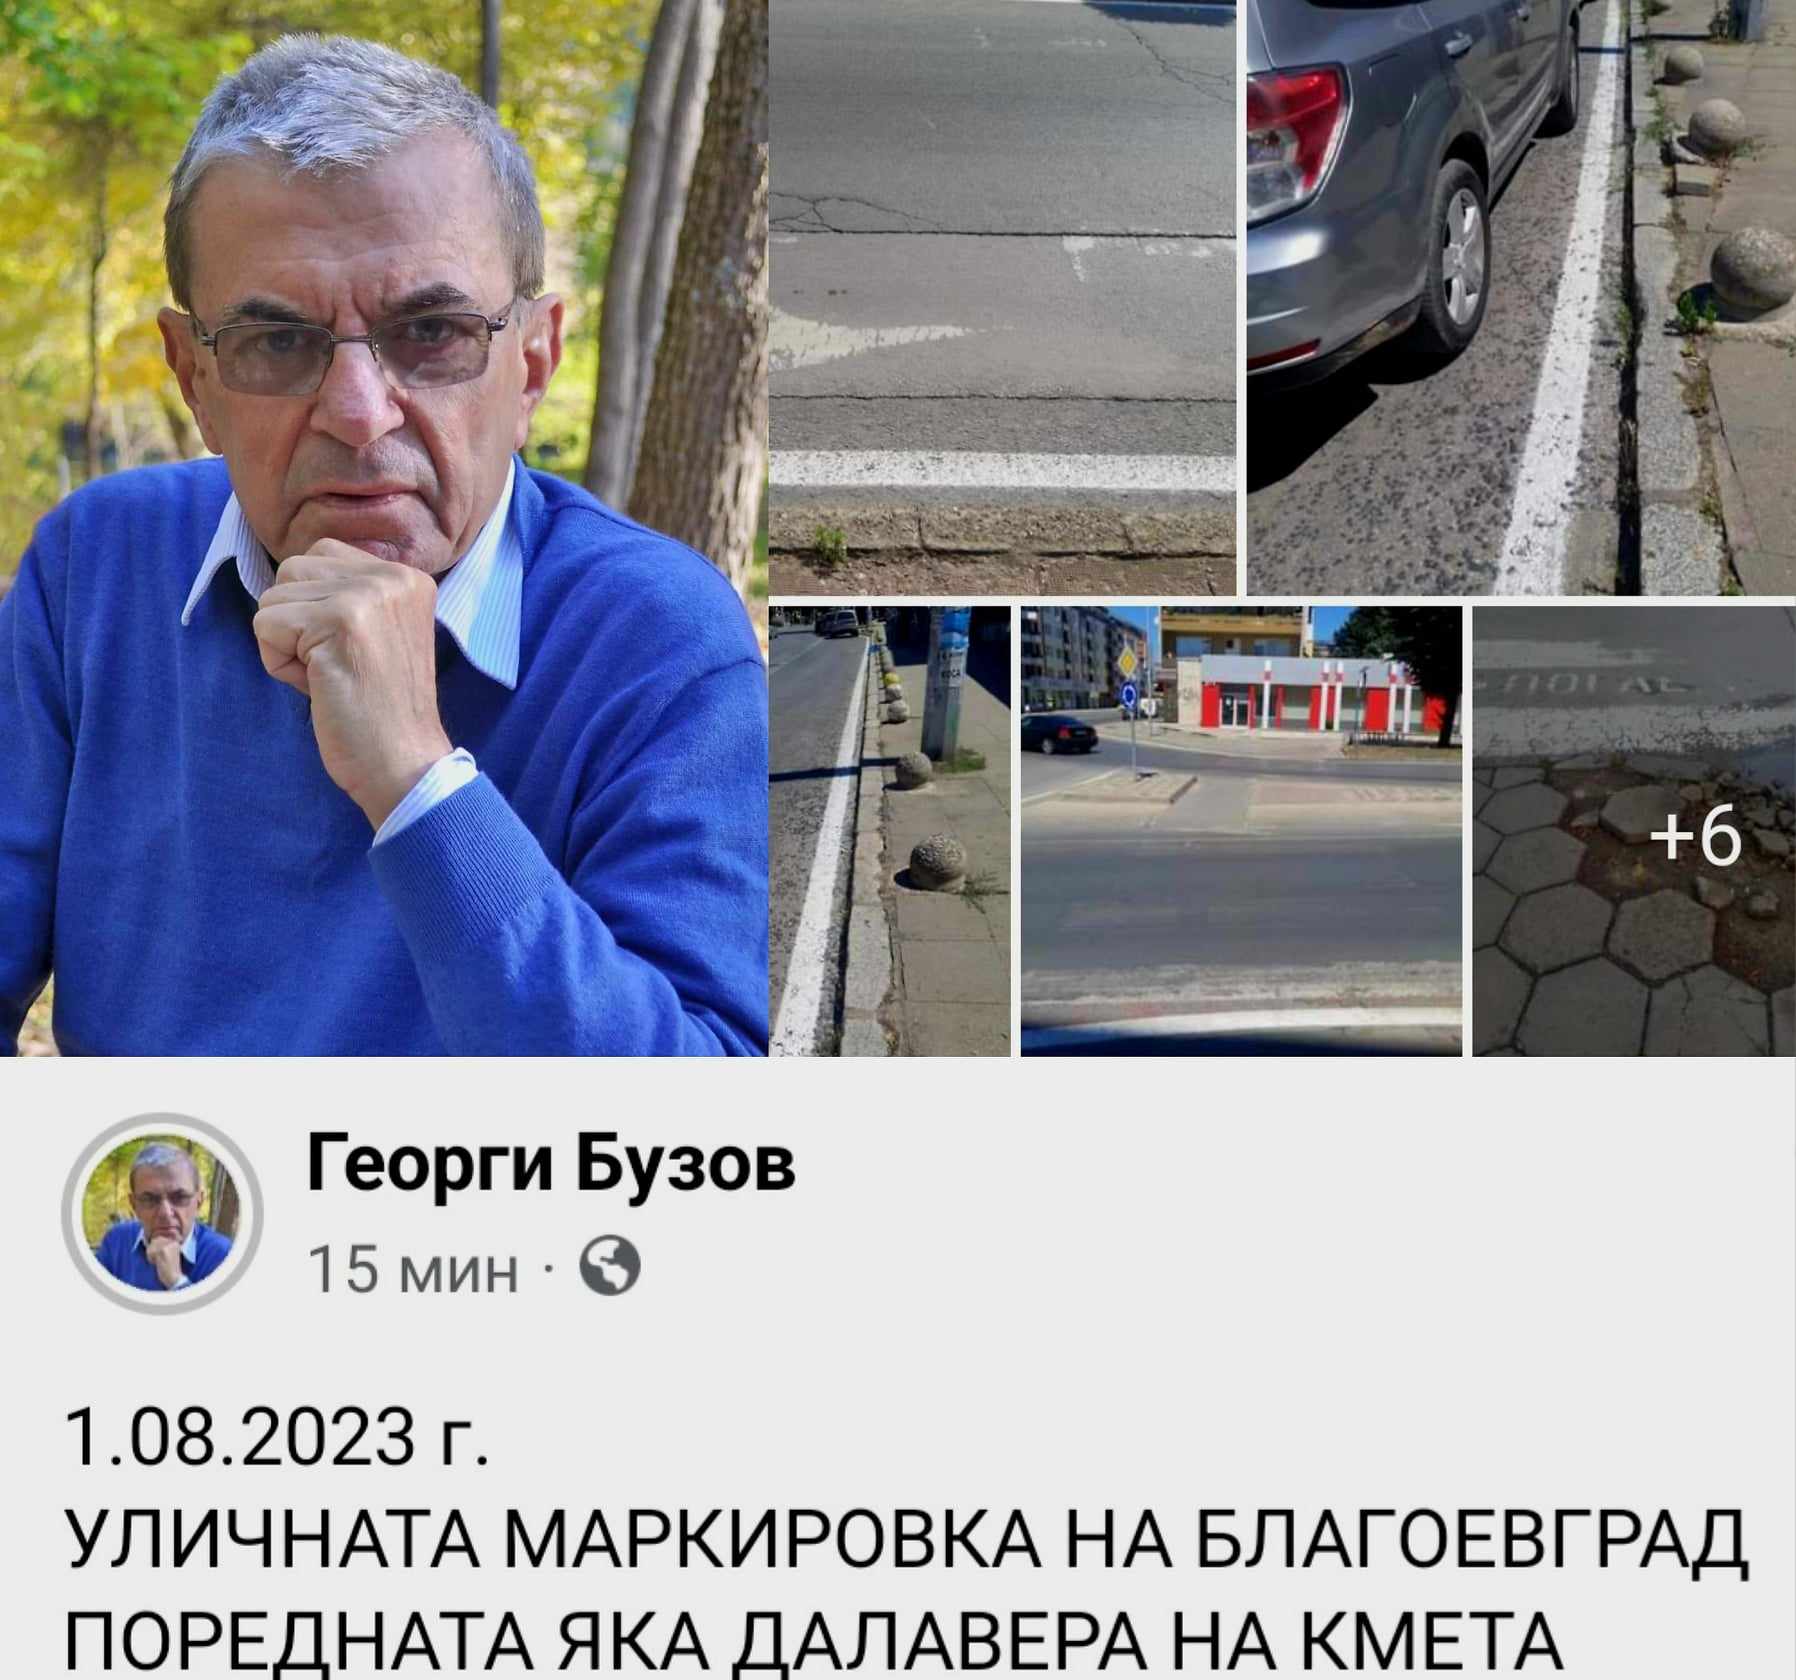 Георги Бузов: Уличната маркировка на Благоевград поредната яка далавера на кмета